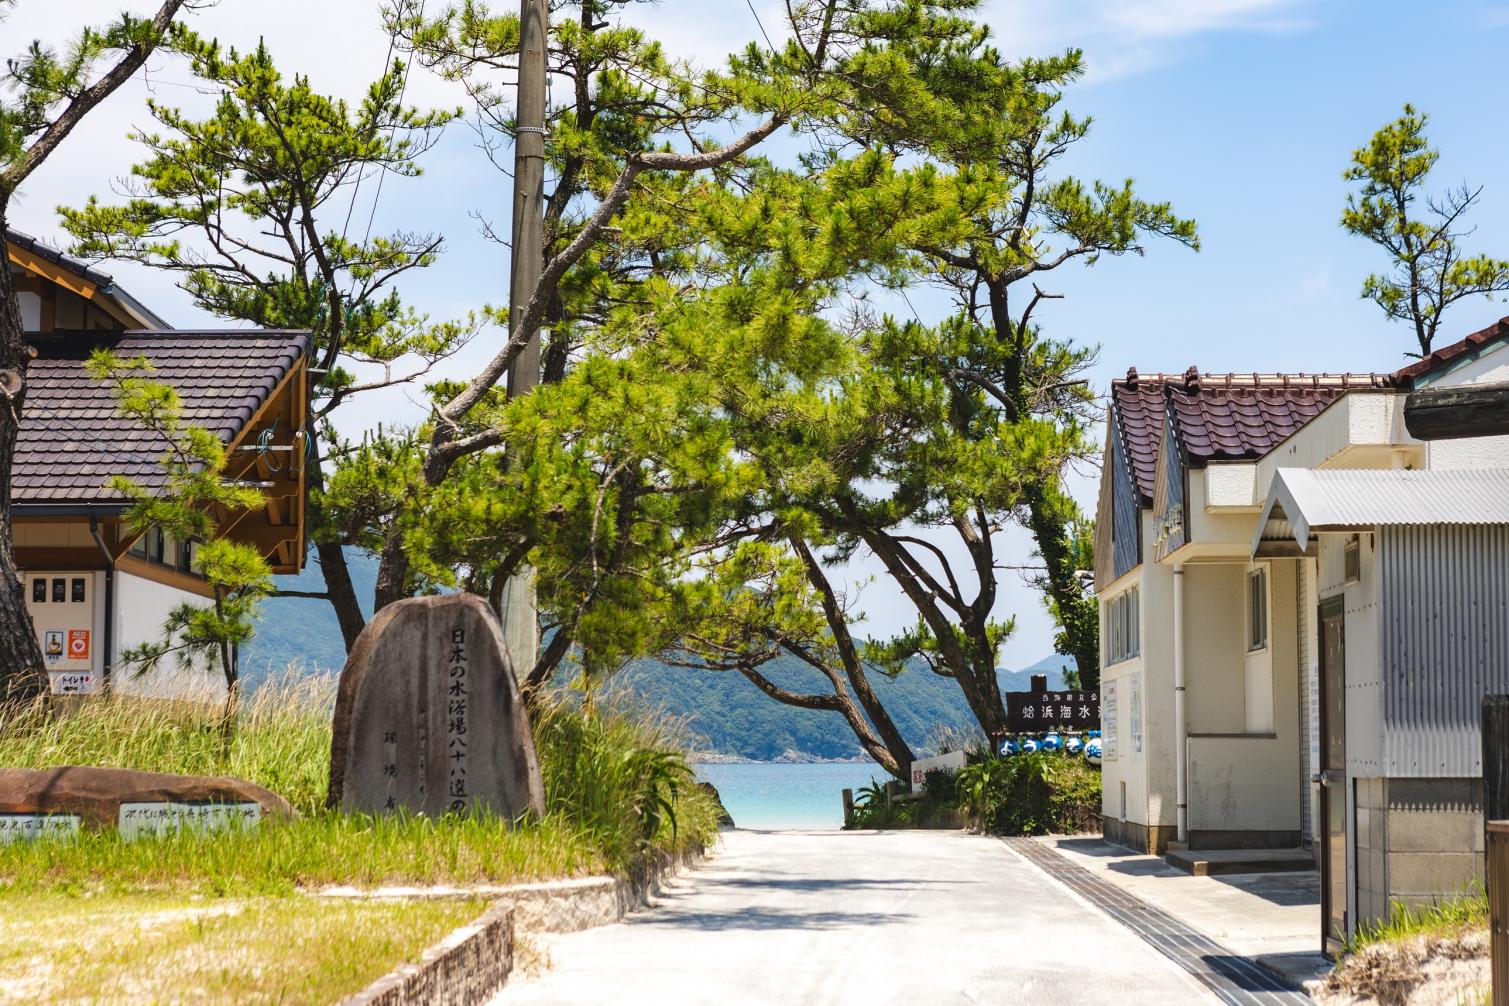 日本の快水浴場百選に選ばれた新上五島町の代表的な海-0